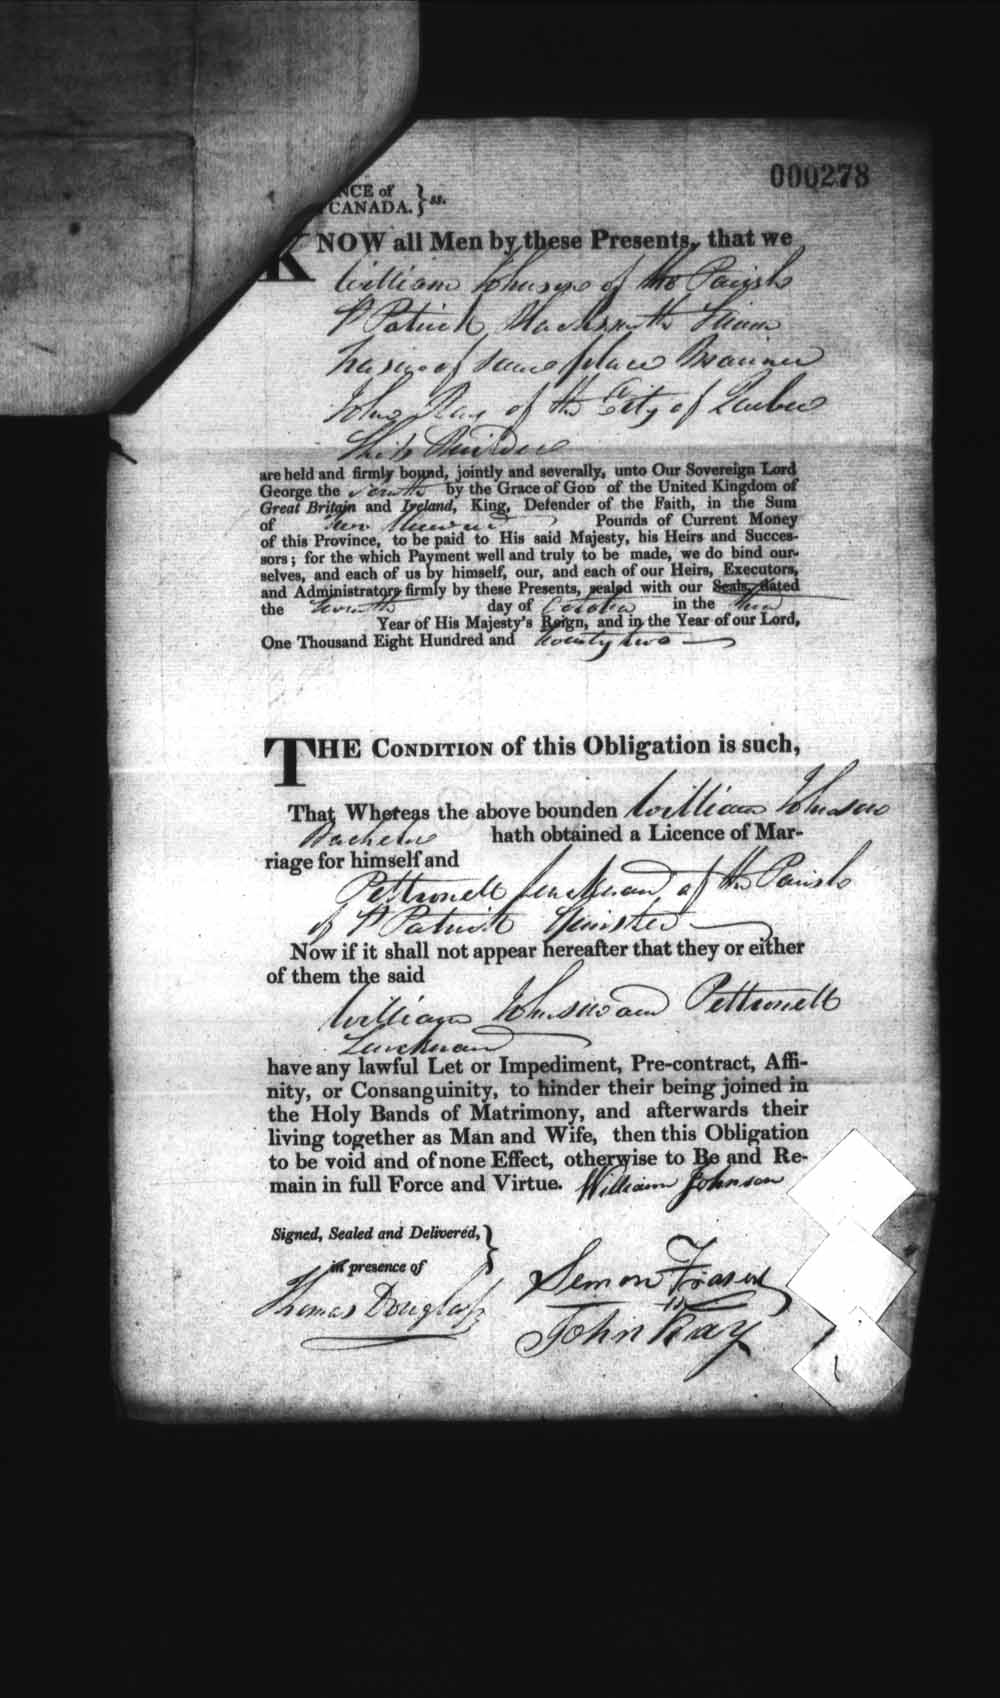 Page numérisé de Cautionnements de mariages pour le Haut-Canada et le Bas-Canada (1779-1865) pour l'image numéro: e008236147